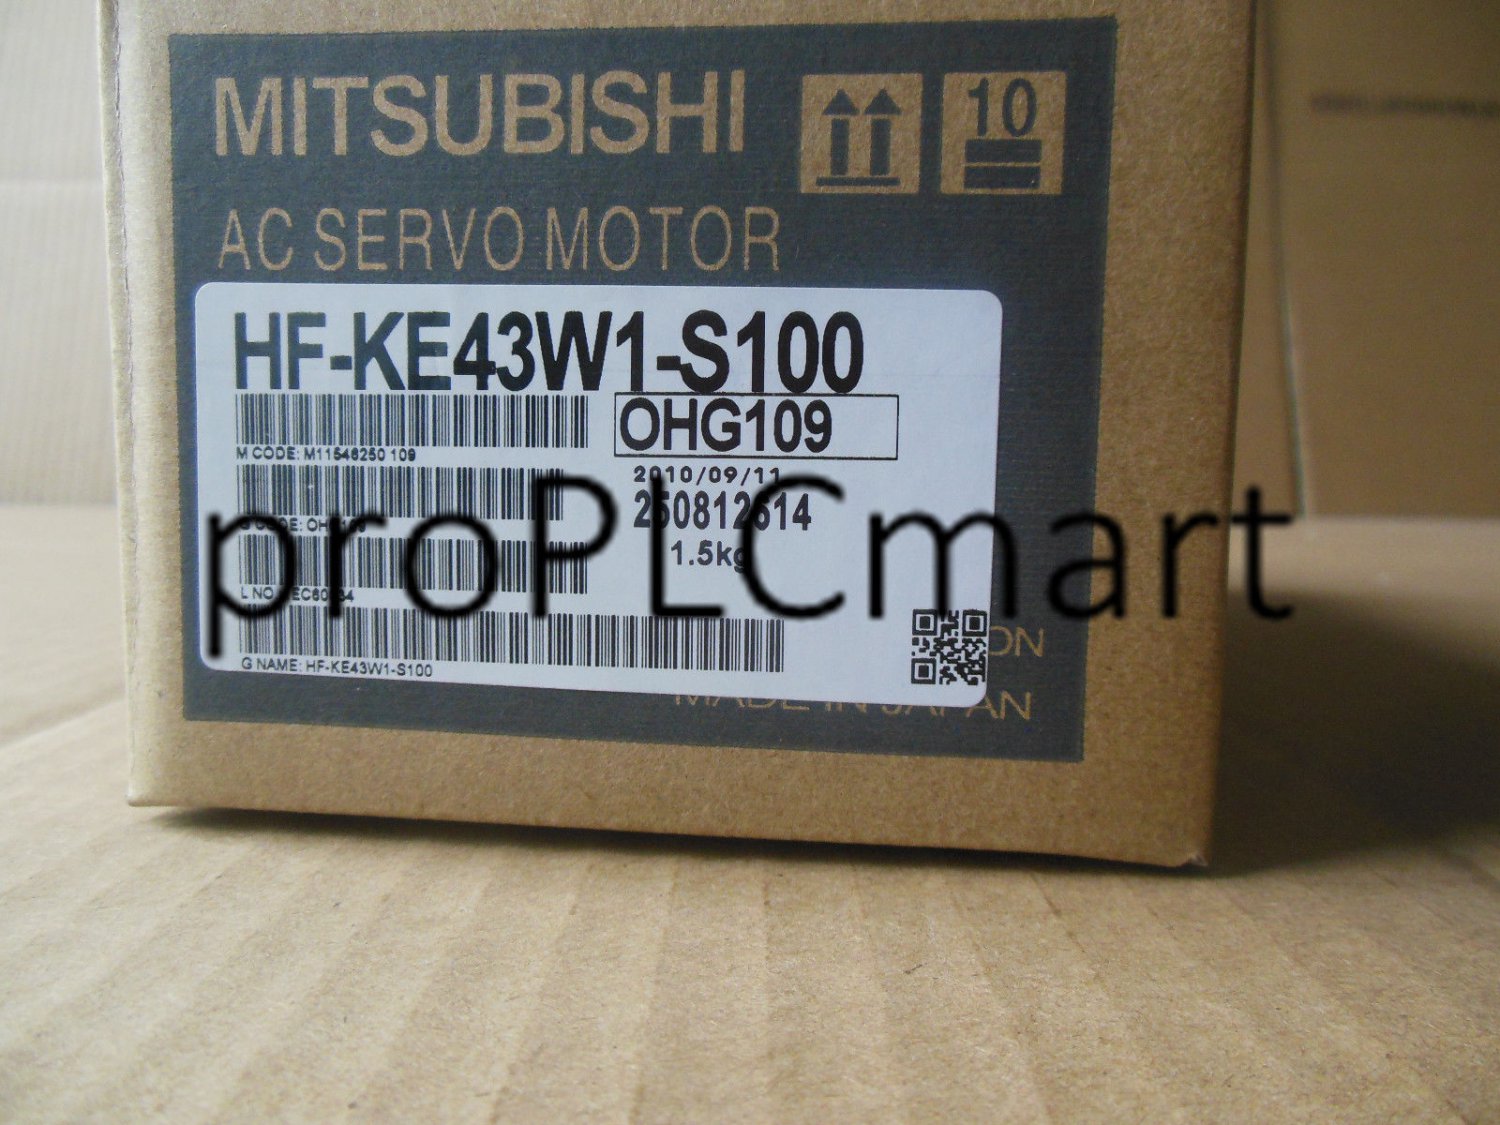 MITSUBISHI SERVO MOTOR HF-KE43W1-S100 FREE EXPEDITED SHIPPING HFKE43W1S100 NEW